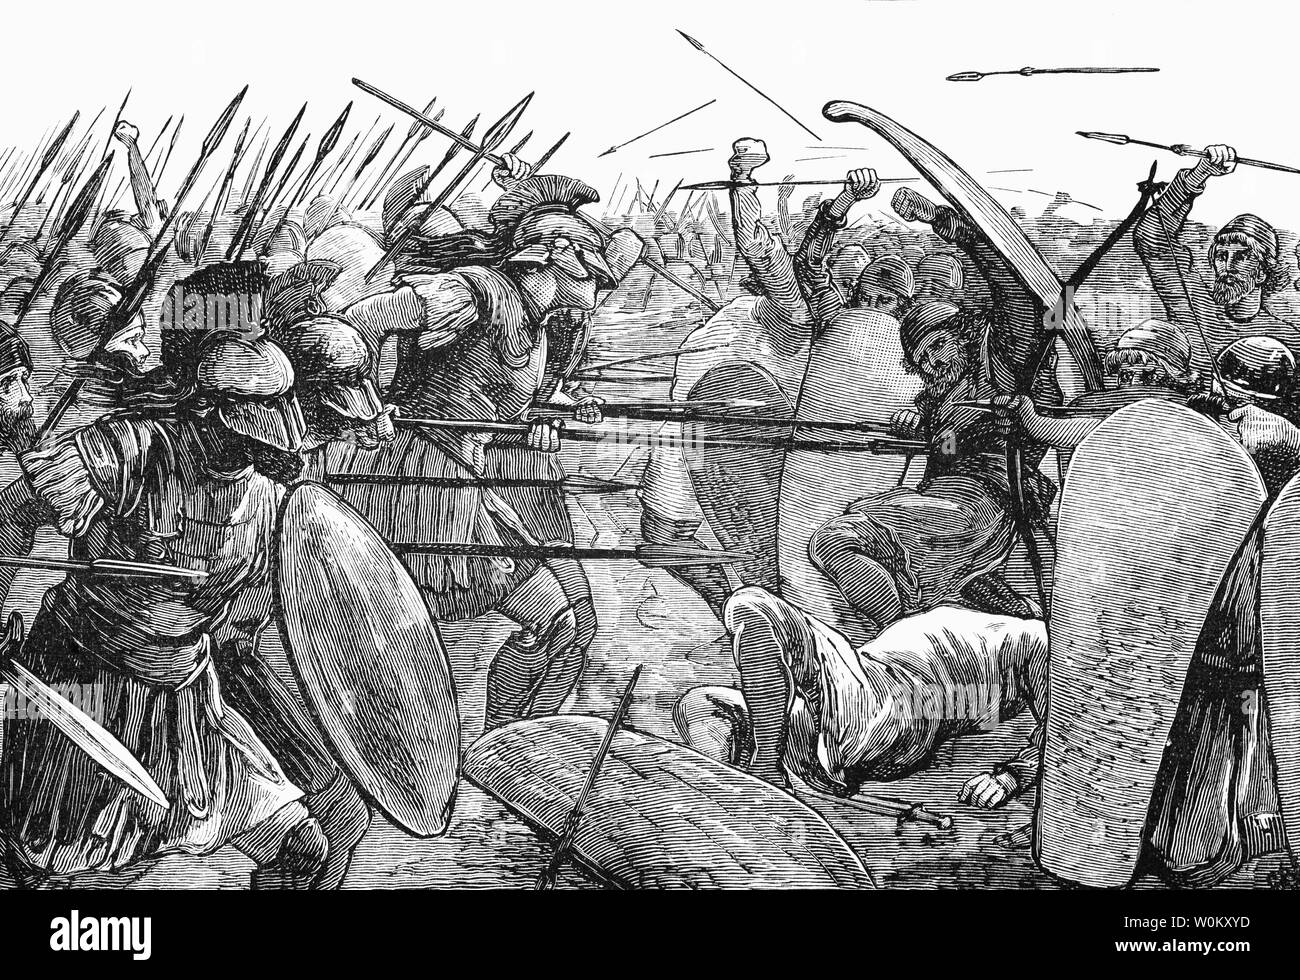 Die Schlacht von Plataea, dem letzten Land Schlacht während des zweiten Persischen Invasion Griechenlands. Es fand in 479 v. Chr. in der Nähe der Stadt Plataea in Böotien in Mittelgriechenland und wurde zwischen einem Bündnis der griechischen Stadtstaaten (einschließlich Sparta, Athen, Korinth und Megara) gekämpft, und das Persische Reich von Xerxes I (verbündet mit Boeotians, Thessalians und Mazedonier). Nach ihrem Sieg bei Plataea und Mycale der griechischen Verbündeten nahm die Offensive gegen die Perser, markieren eine neue Phase des Greco-Persian Kriege. Stockfoto